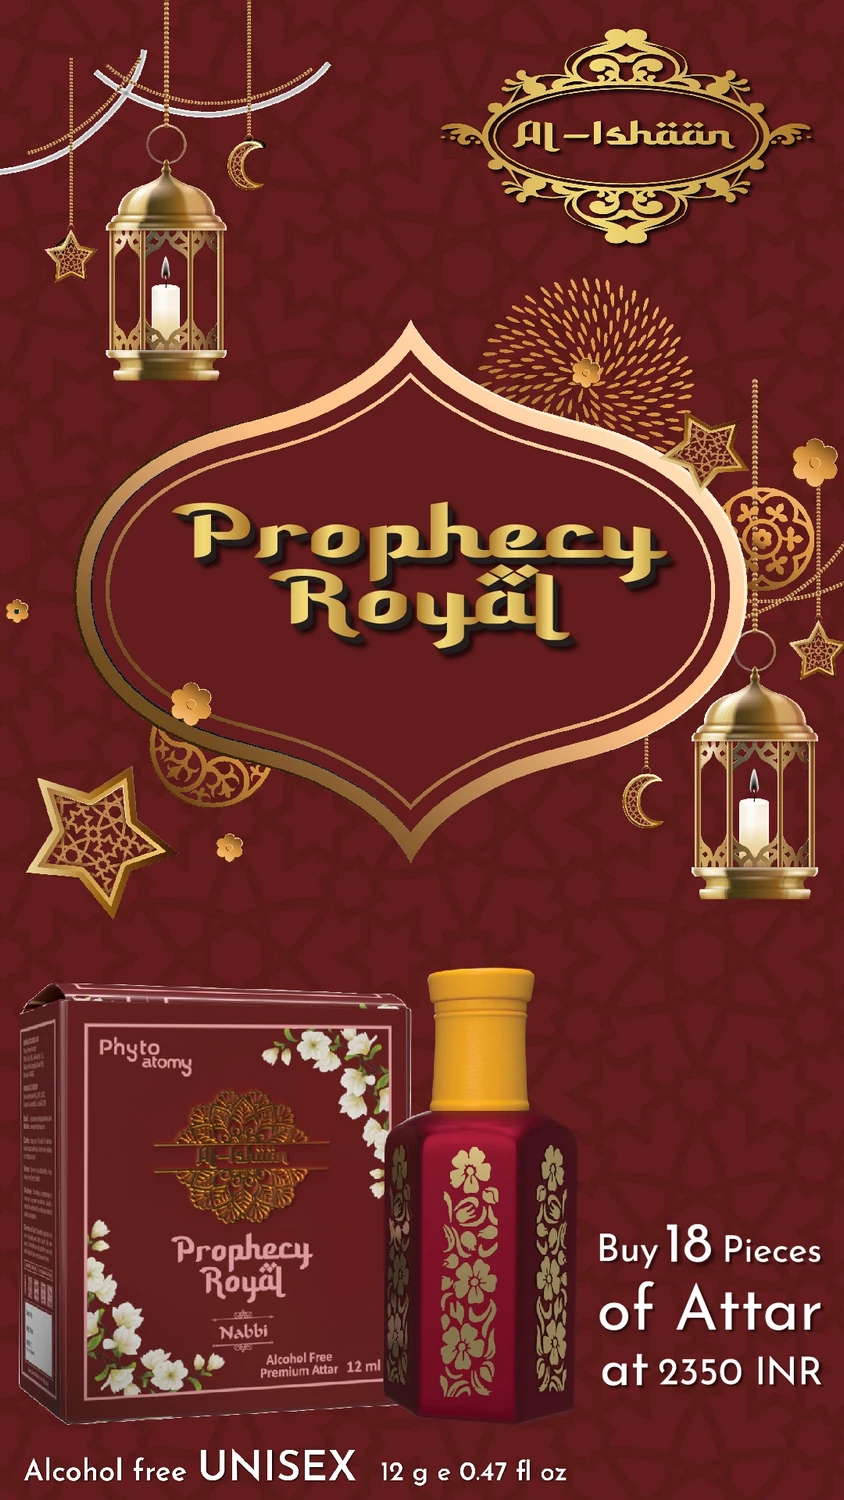 SCBV B2B Al Ishan Prophecy Royal Attar (12ml)-18 Pcs.